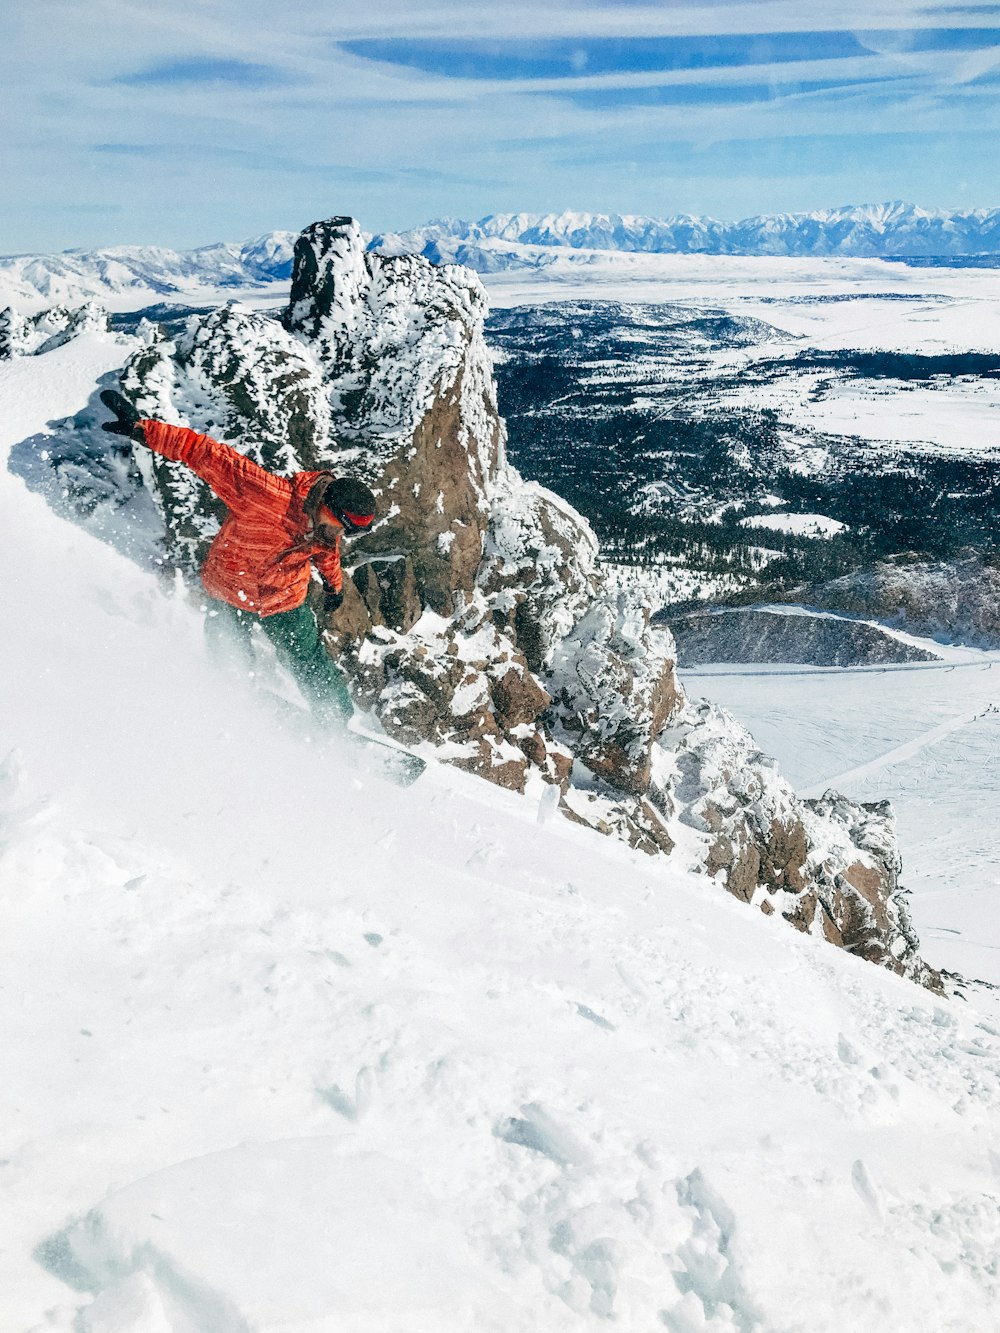 homem snowboard na montanha coberta de gelo